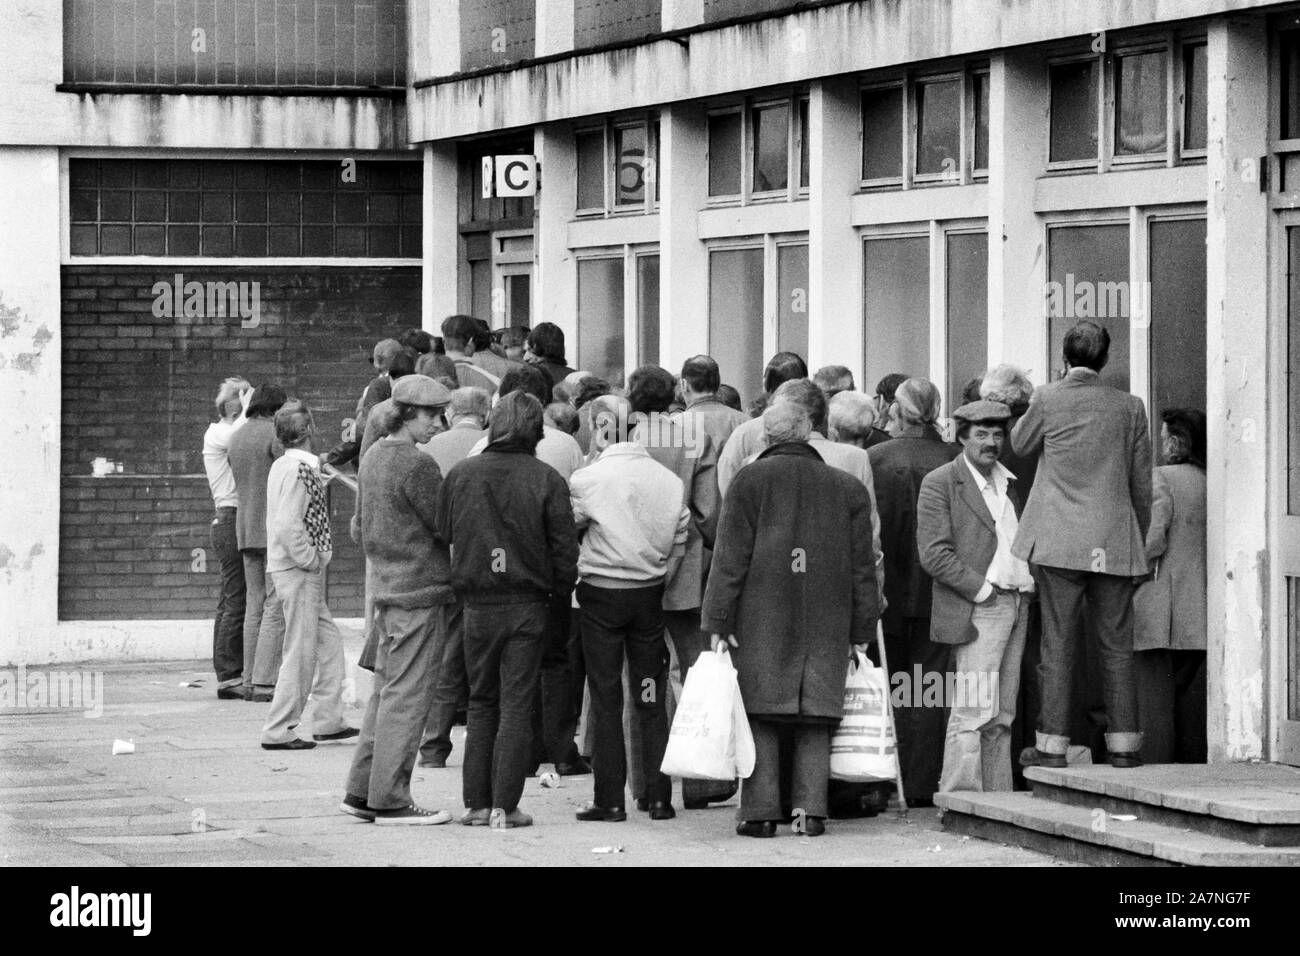 Gli uomini disoccupati accodano in un ufficio del South London, UK, DHSS negli anni 80. Fotografato nel 1985 Foto Stock